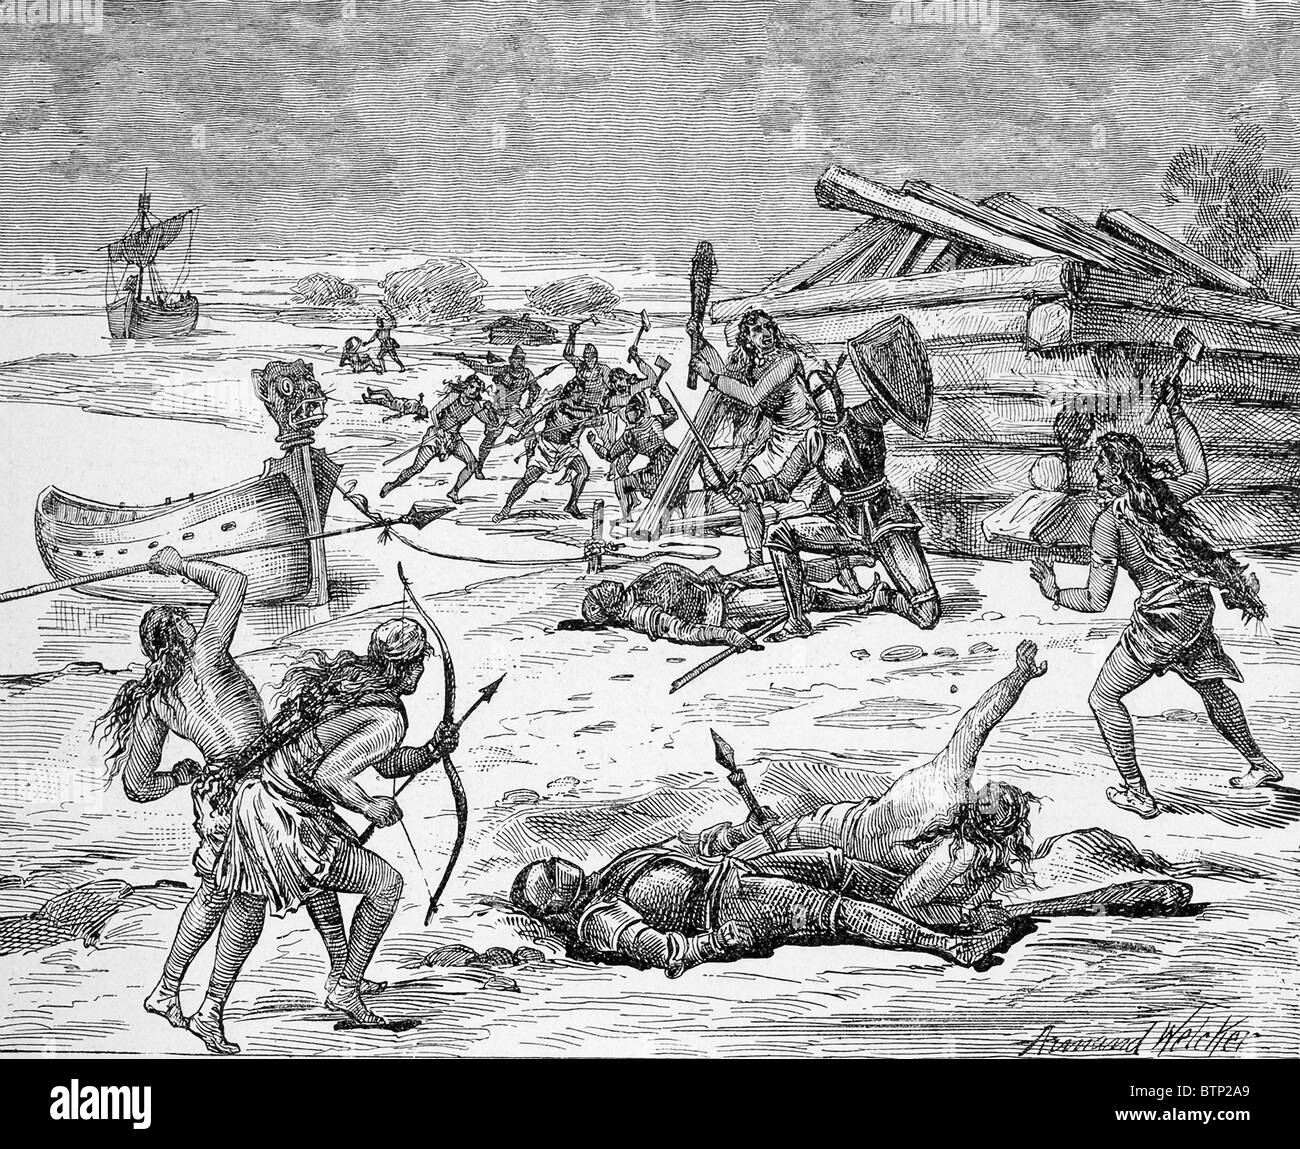 Persuaso dal fratello Leif Ericson per venire alla Groenlandia, Thorvald ha fatto e in seguito è stato ucciso dai nativi. Foto Stock